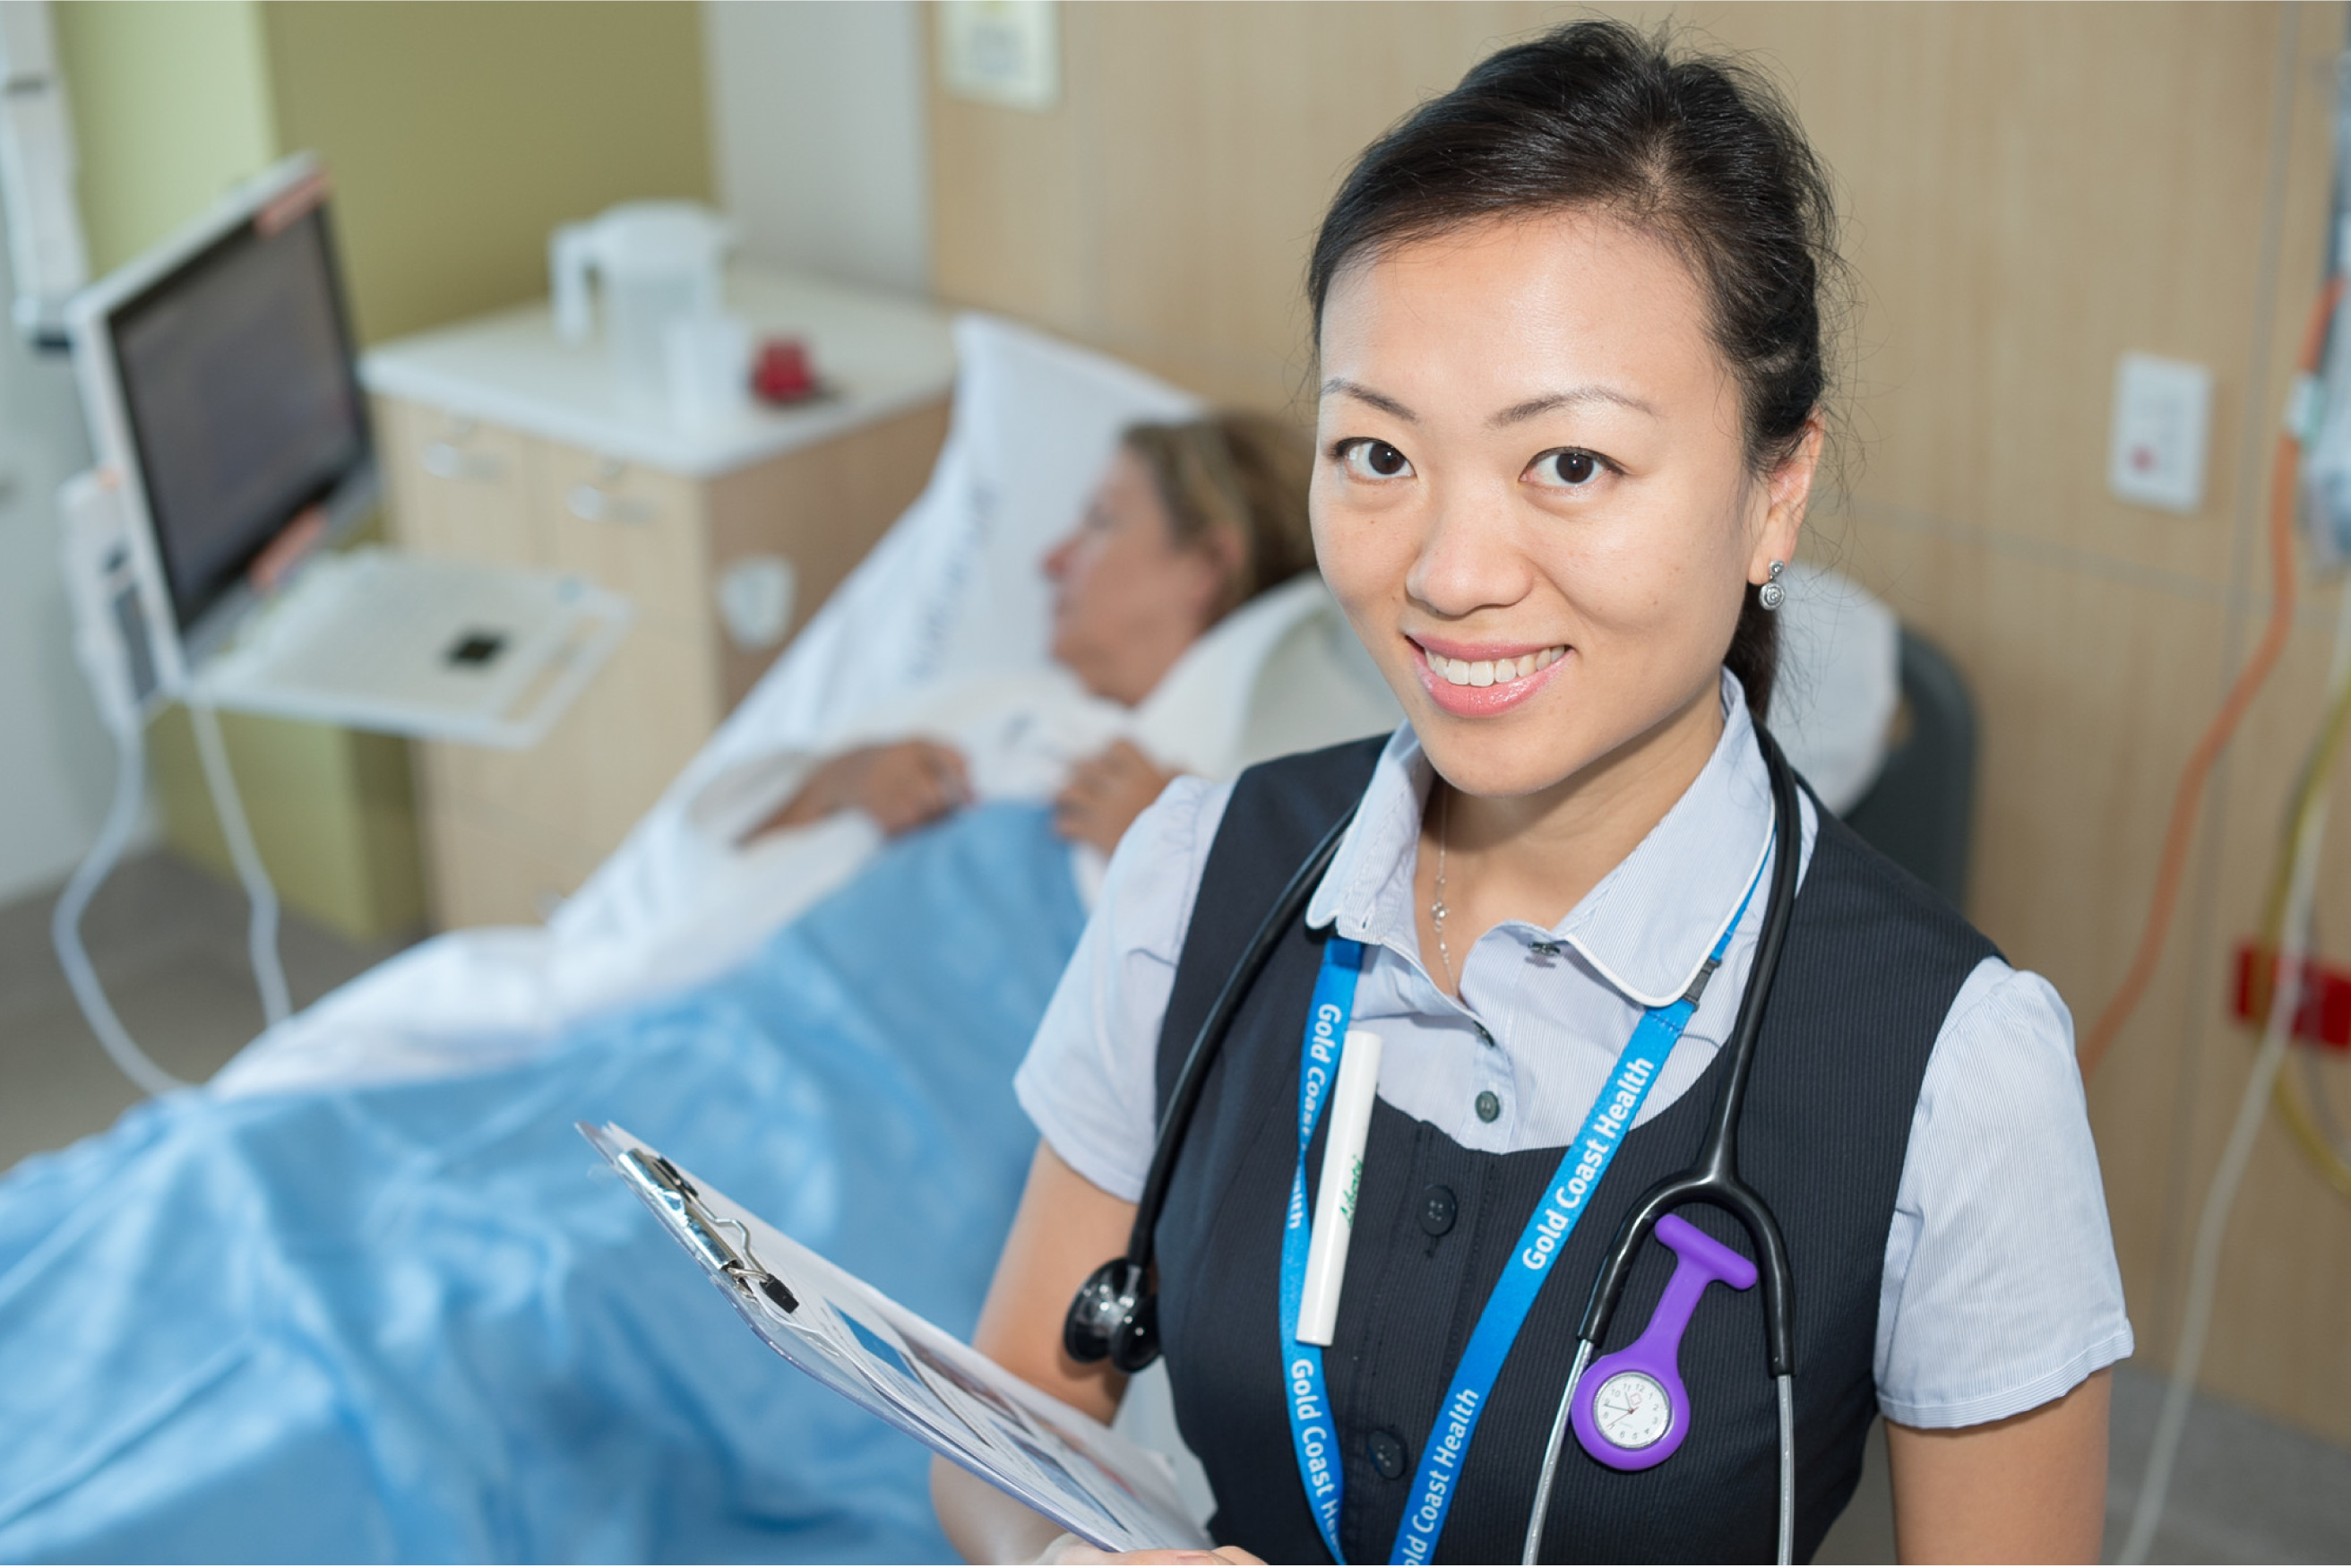 Registered nurse jobs gold coast